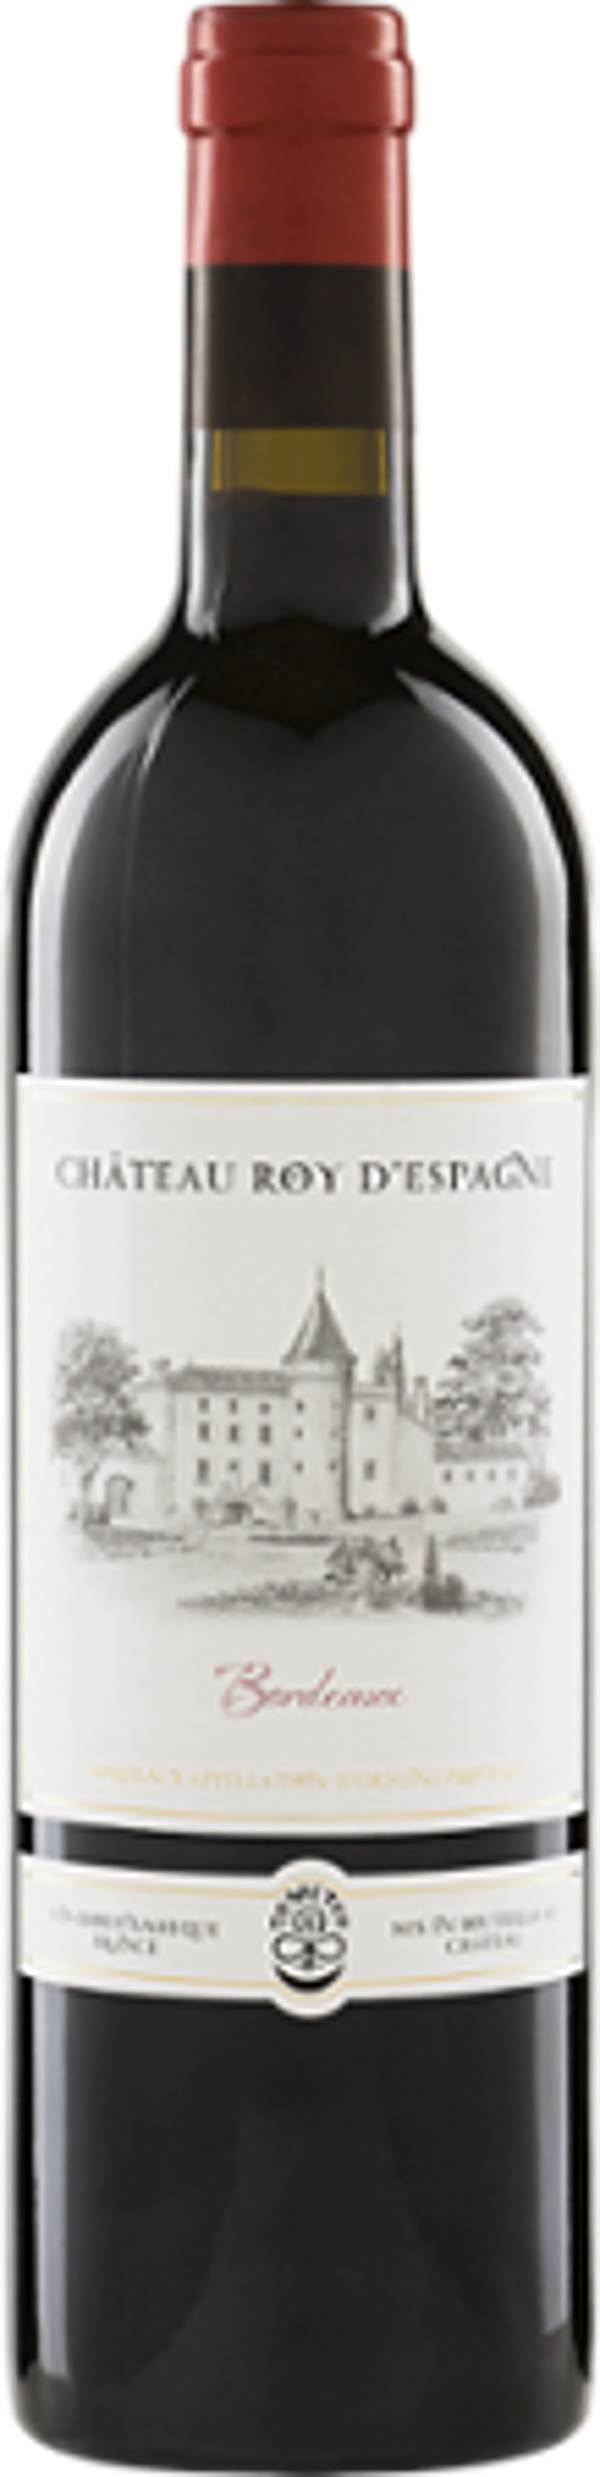 Produktfoto zu Château Roy d'Espagne Bordeaux